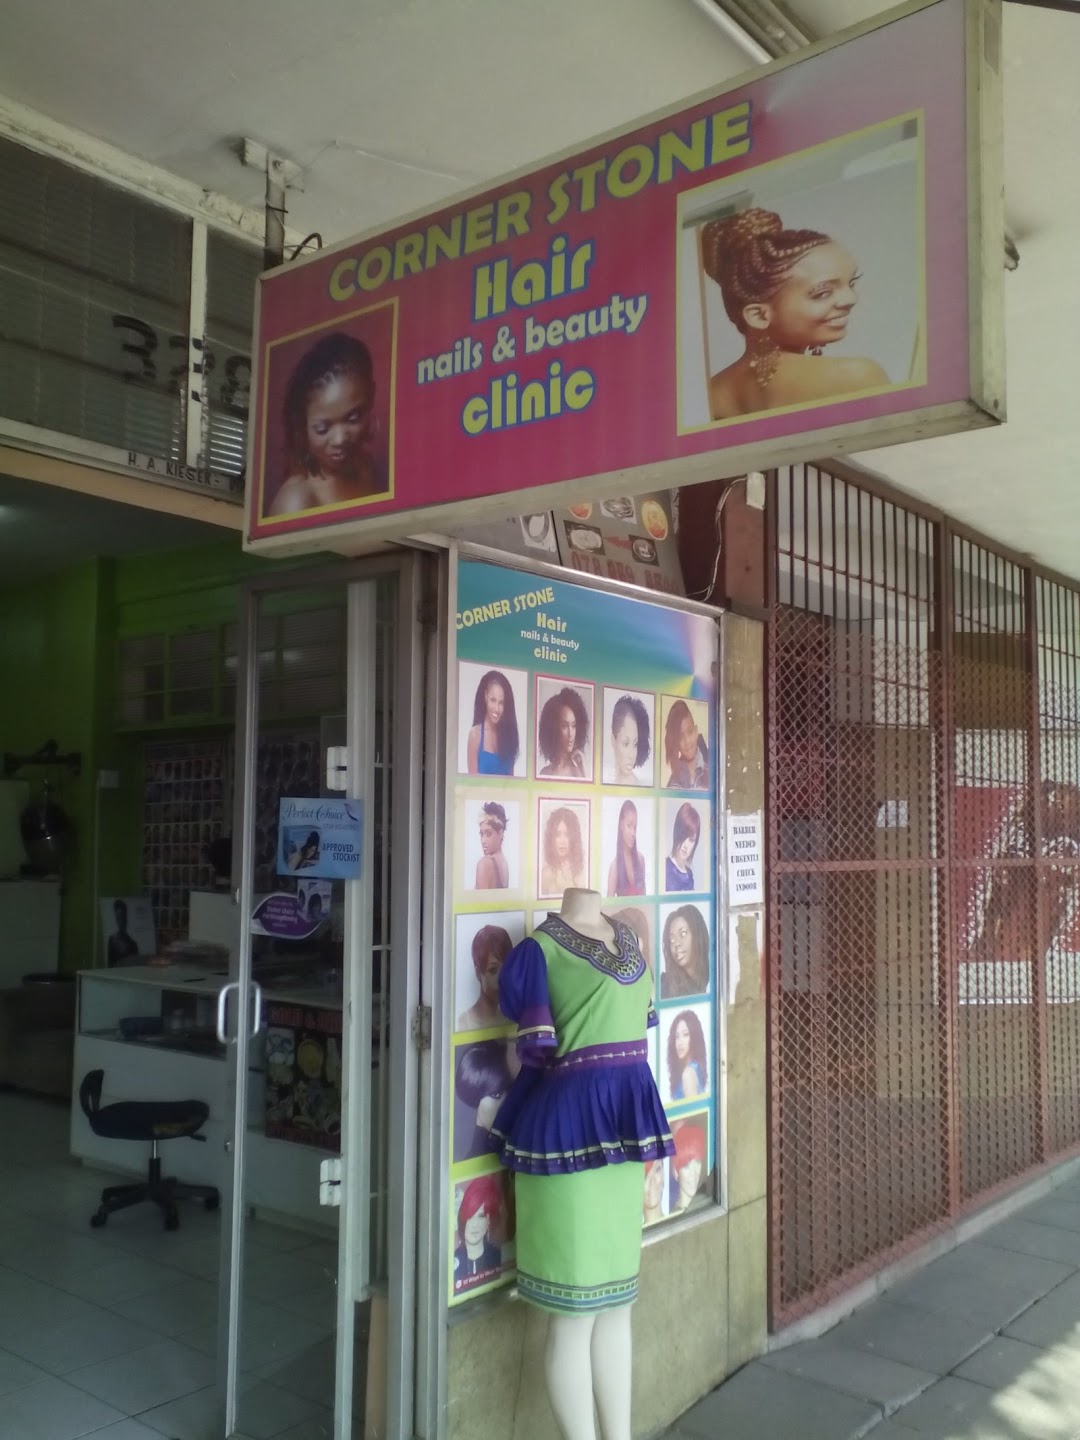 Corner Stone Hair Nails & Beauty Clinic